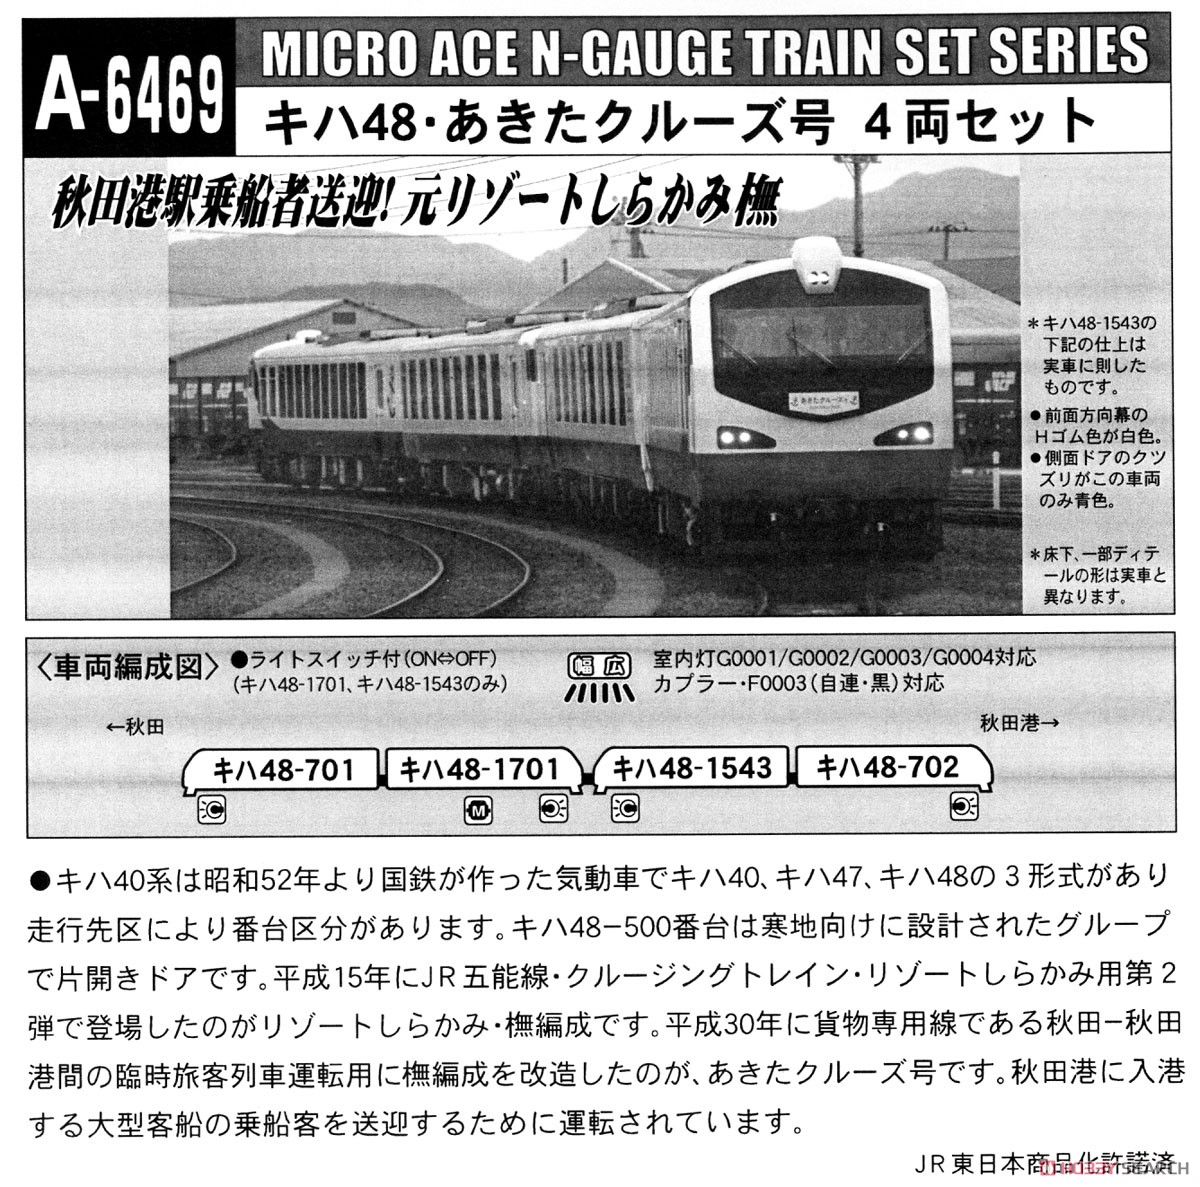 キハ48・あきたクルーズ号 (4両セット) (鉄道模型) 解説1